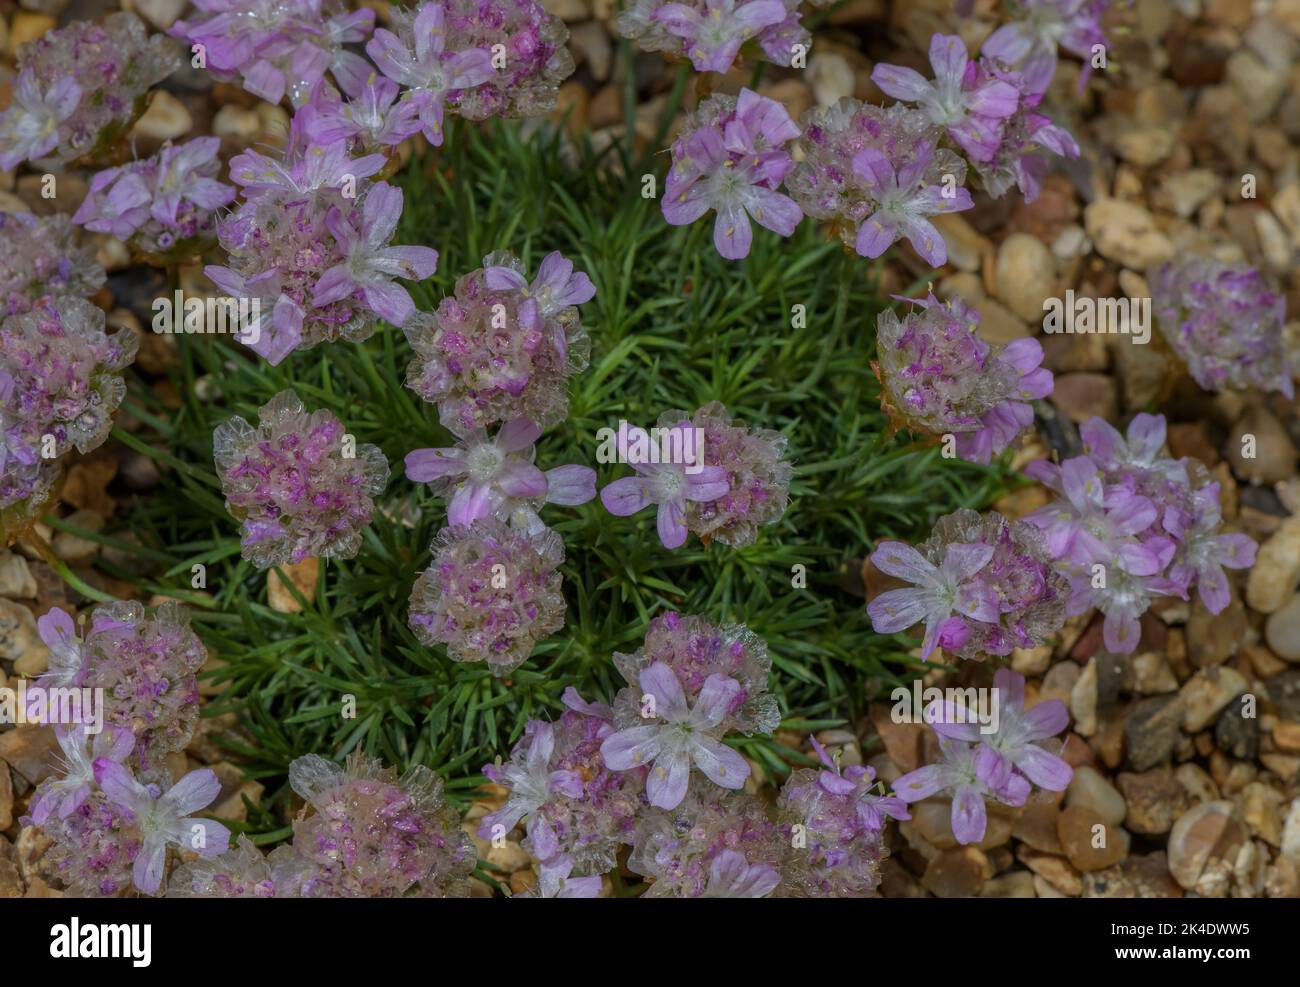 Fioritura di ginepro, Armeria juniperifolia, in fiore in giardino alpino. Foto Stock